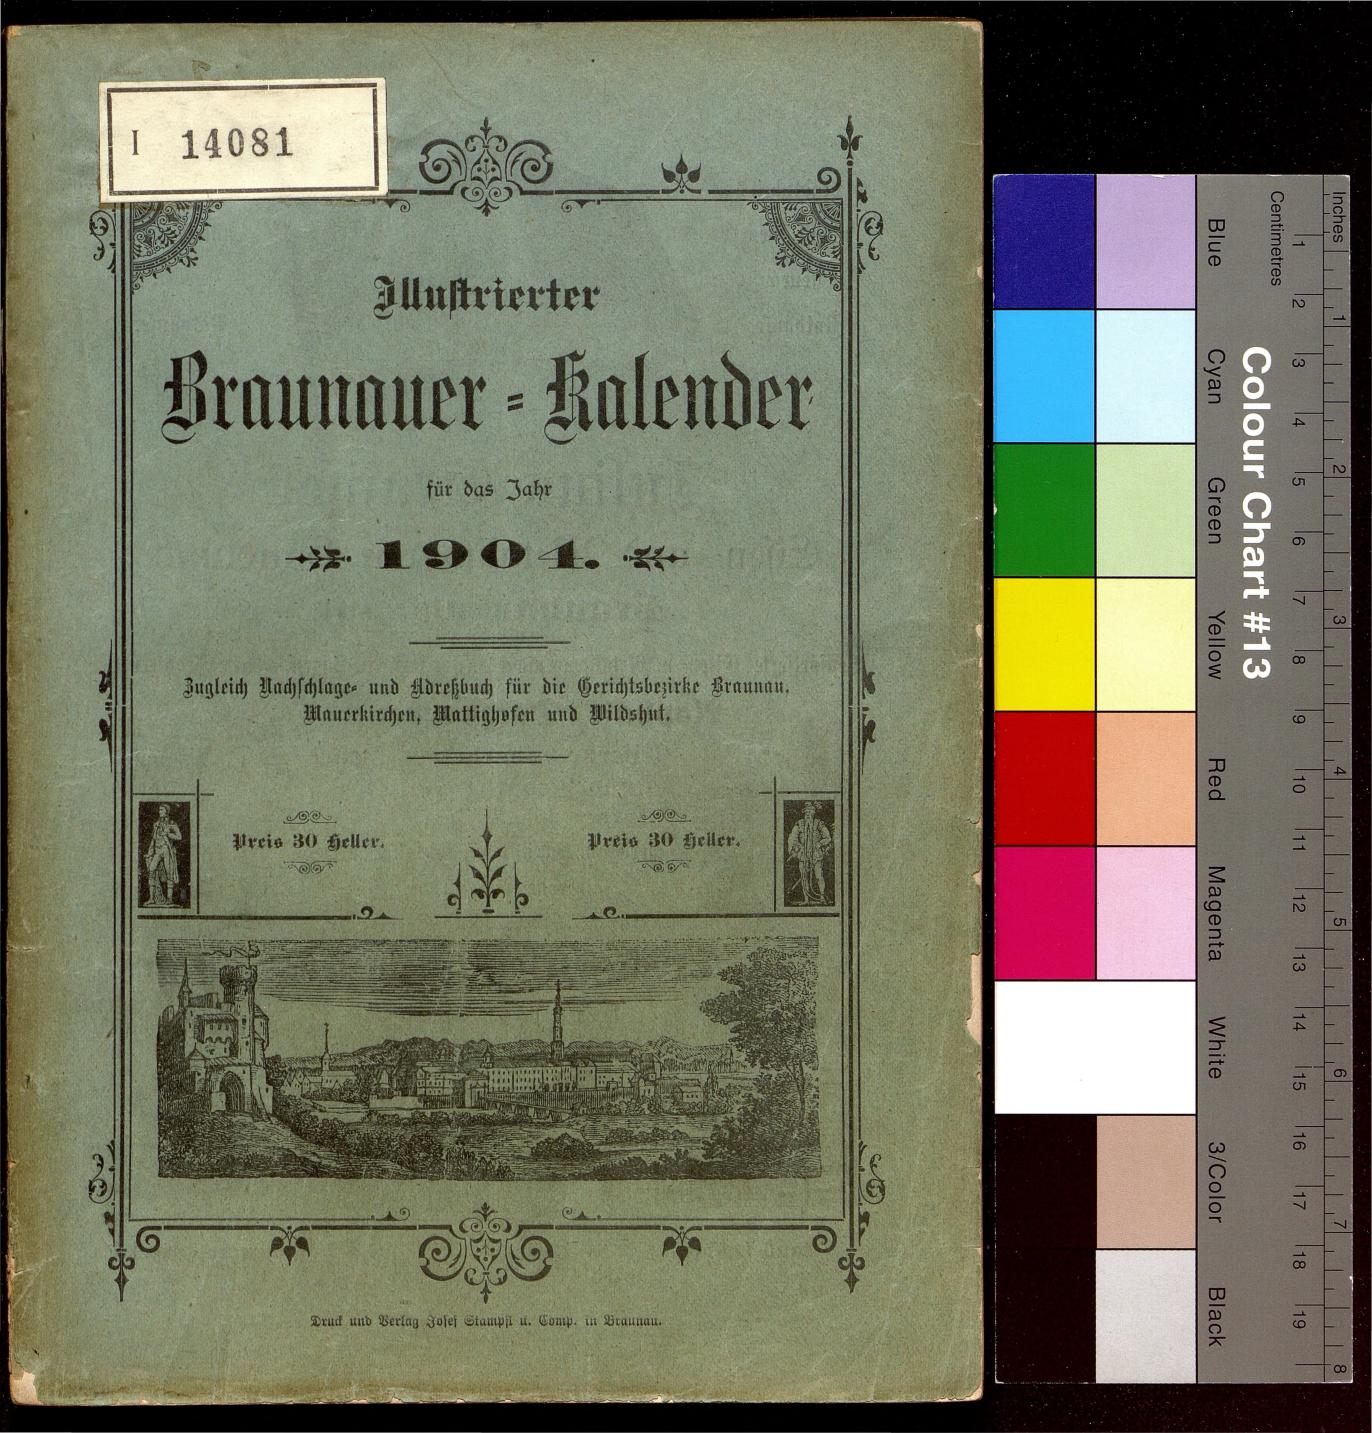 Illustrierter Braunauer-Kalender für das Jahr 1904 - Seite 1